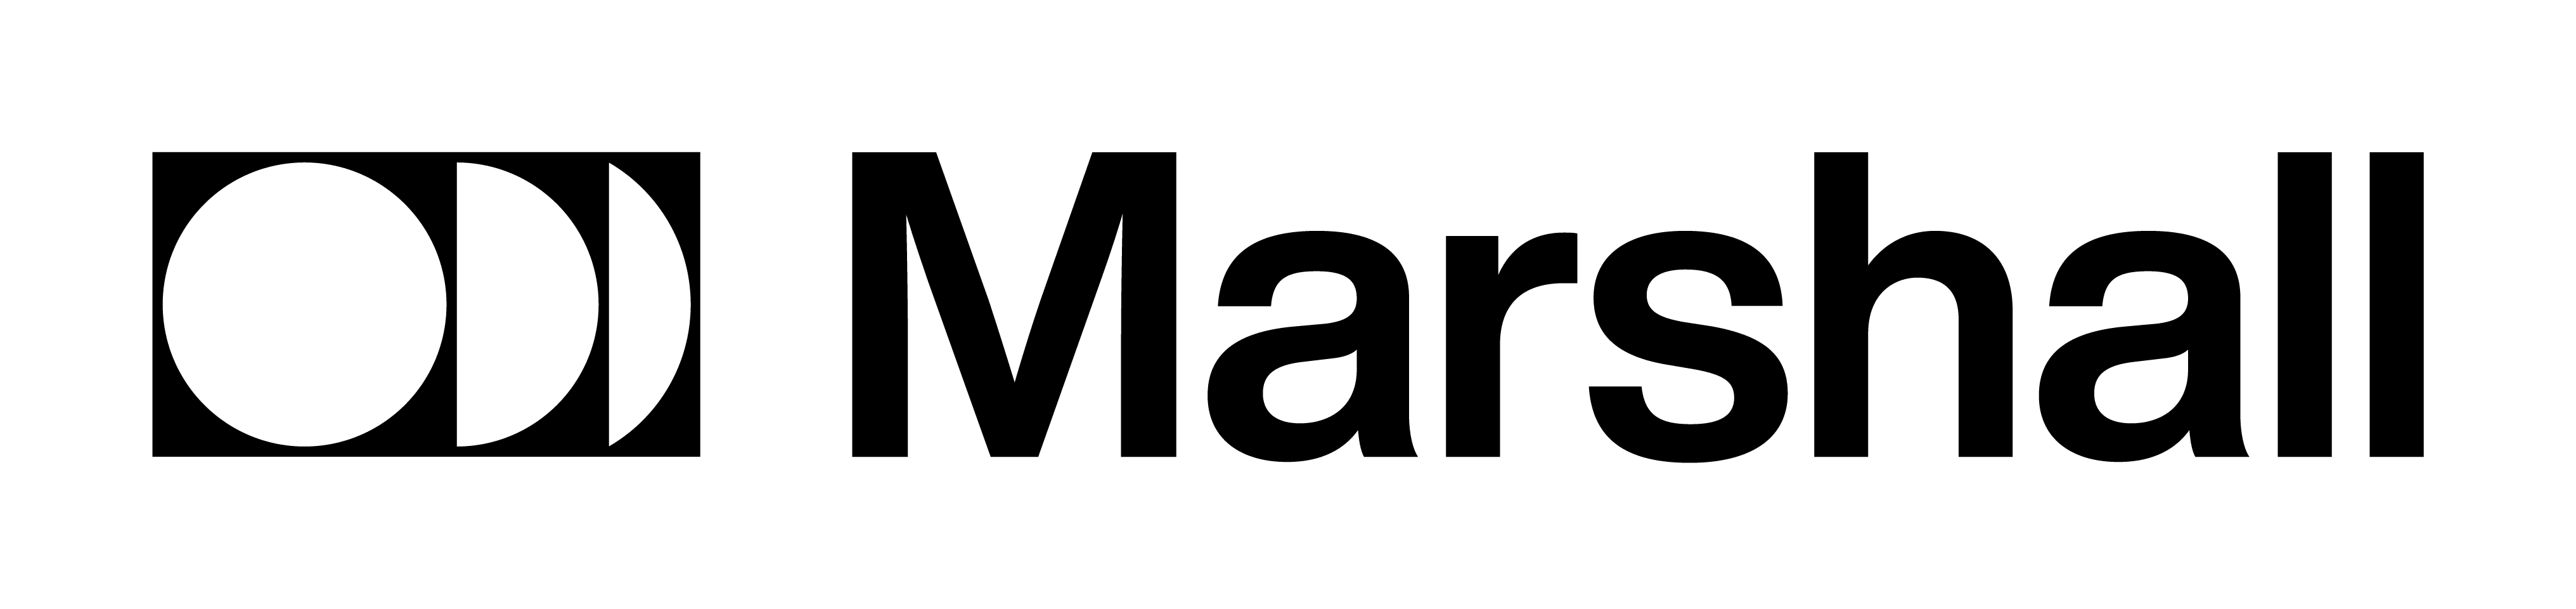 Marshall Gallery company logo